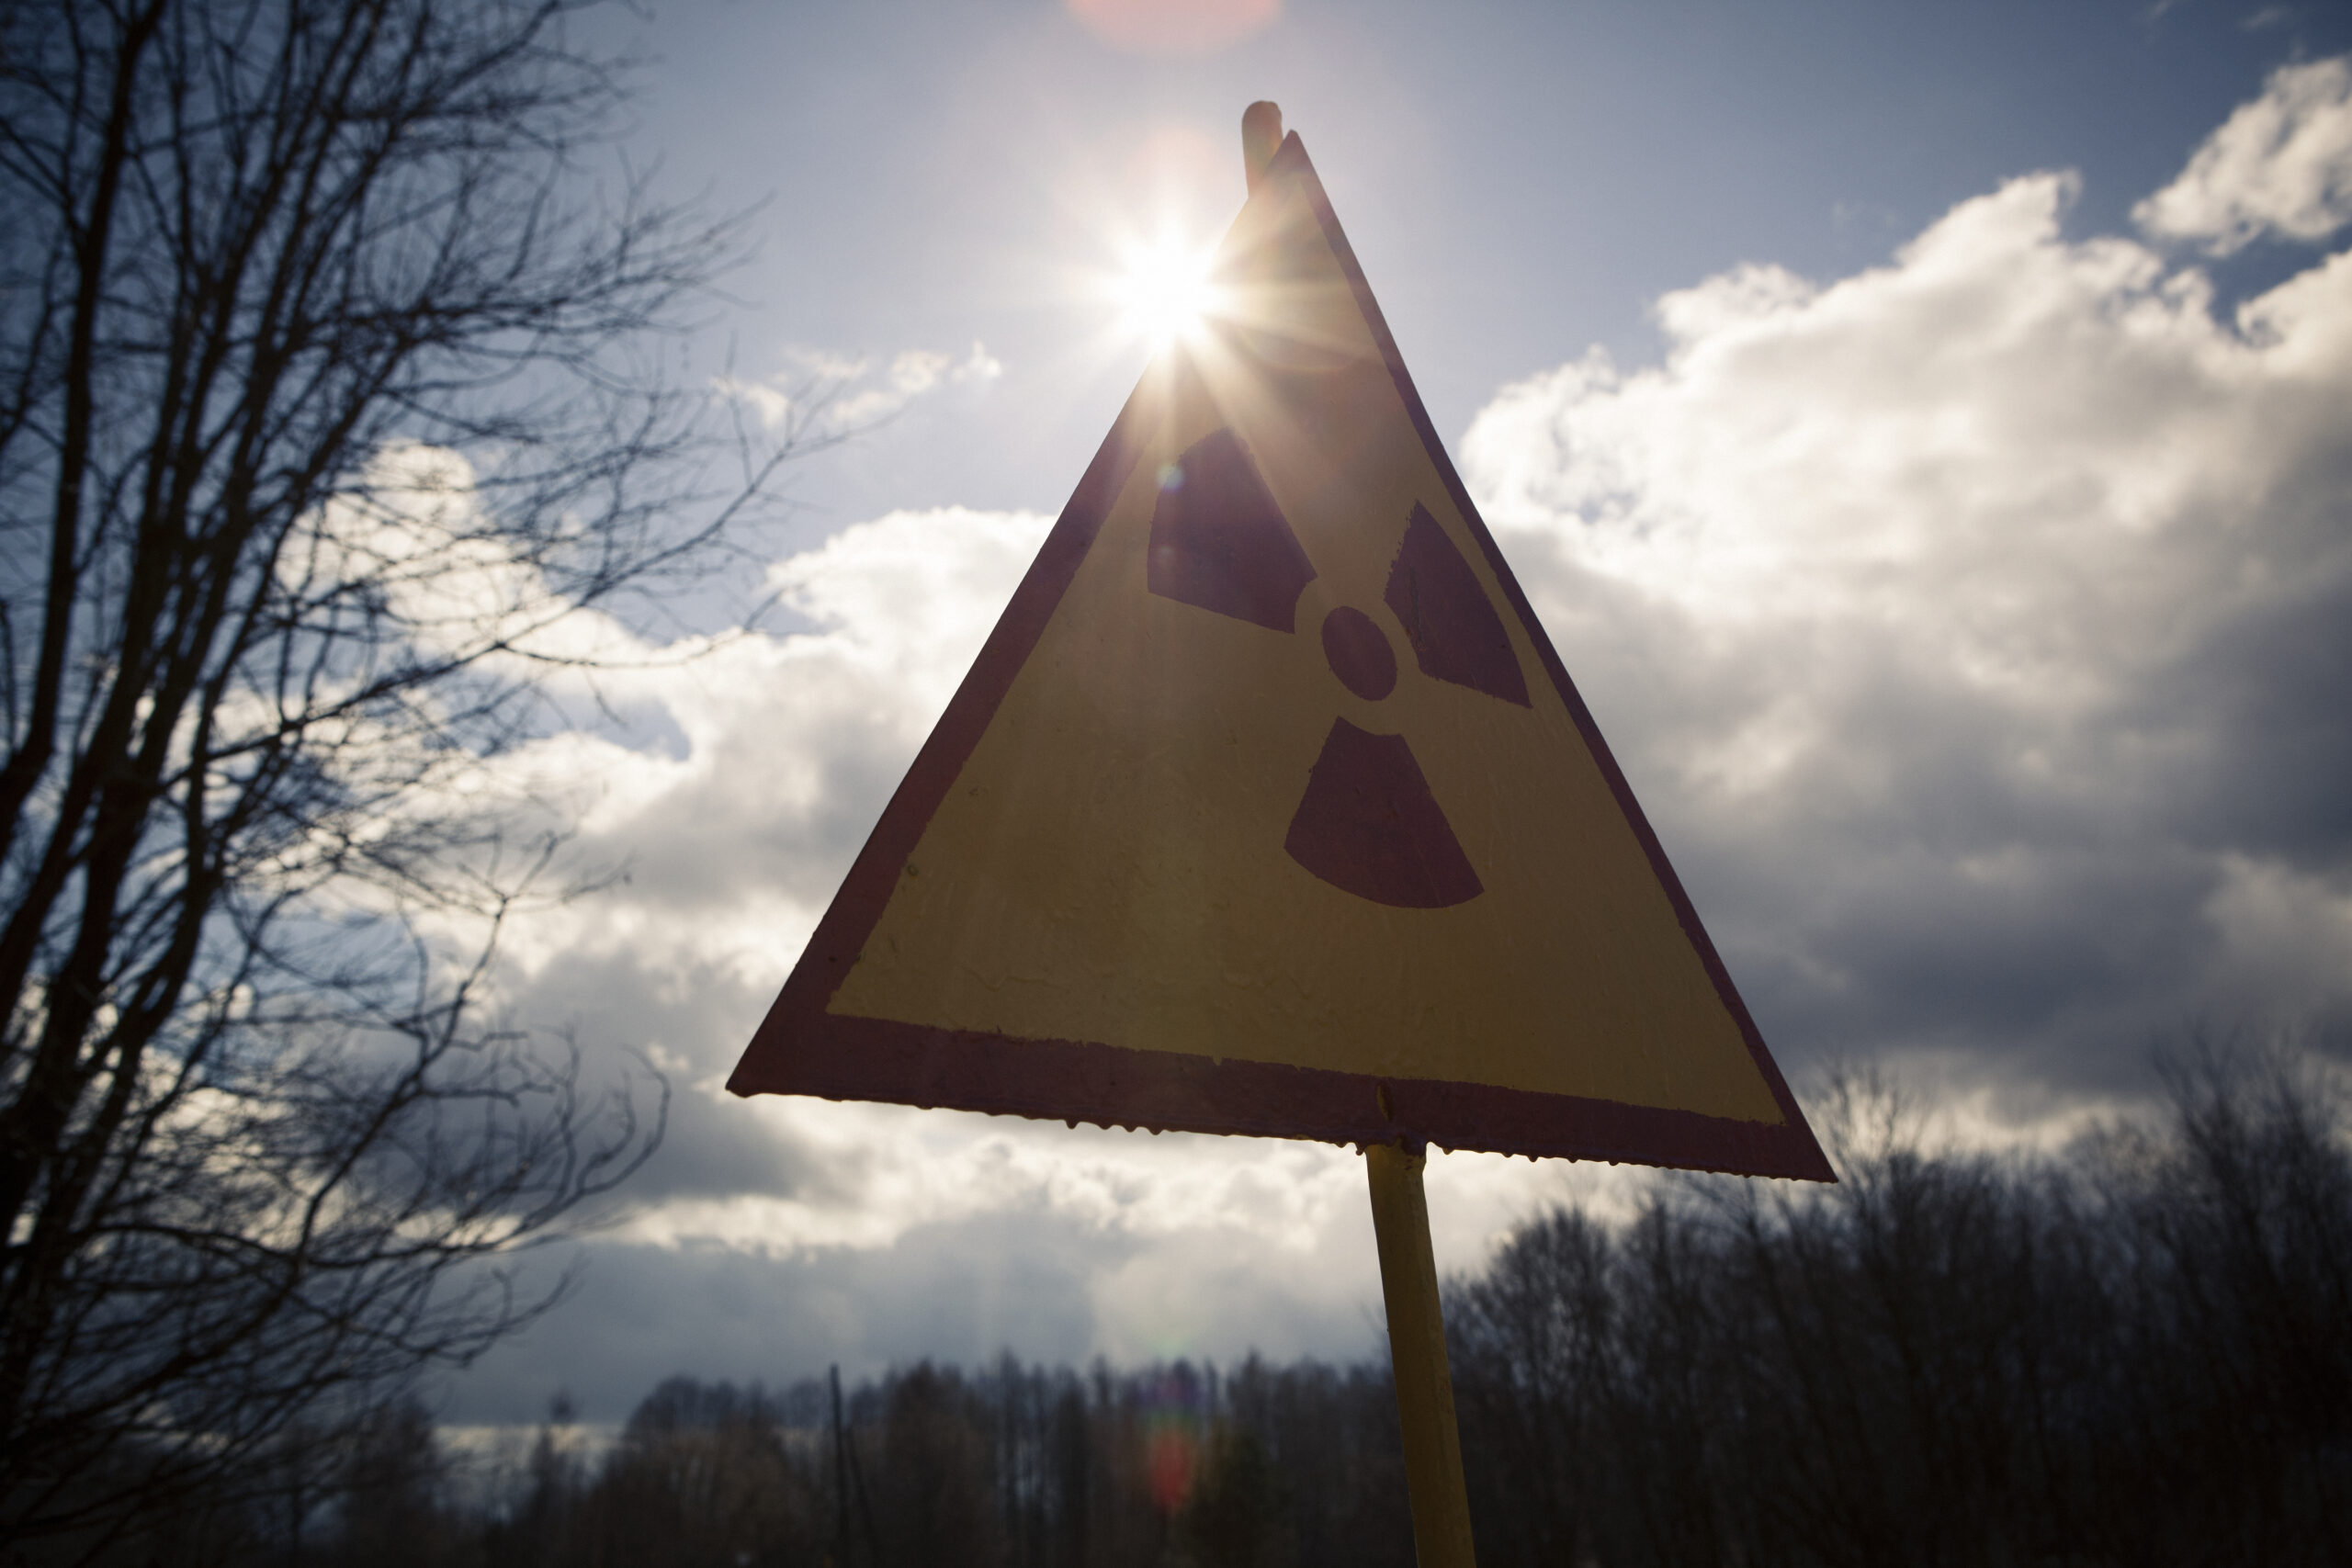 WWII-Era Radioactive Waste Found At Missouri Elementary School